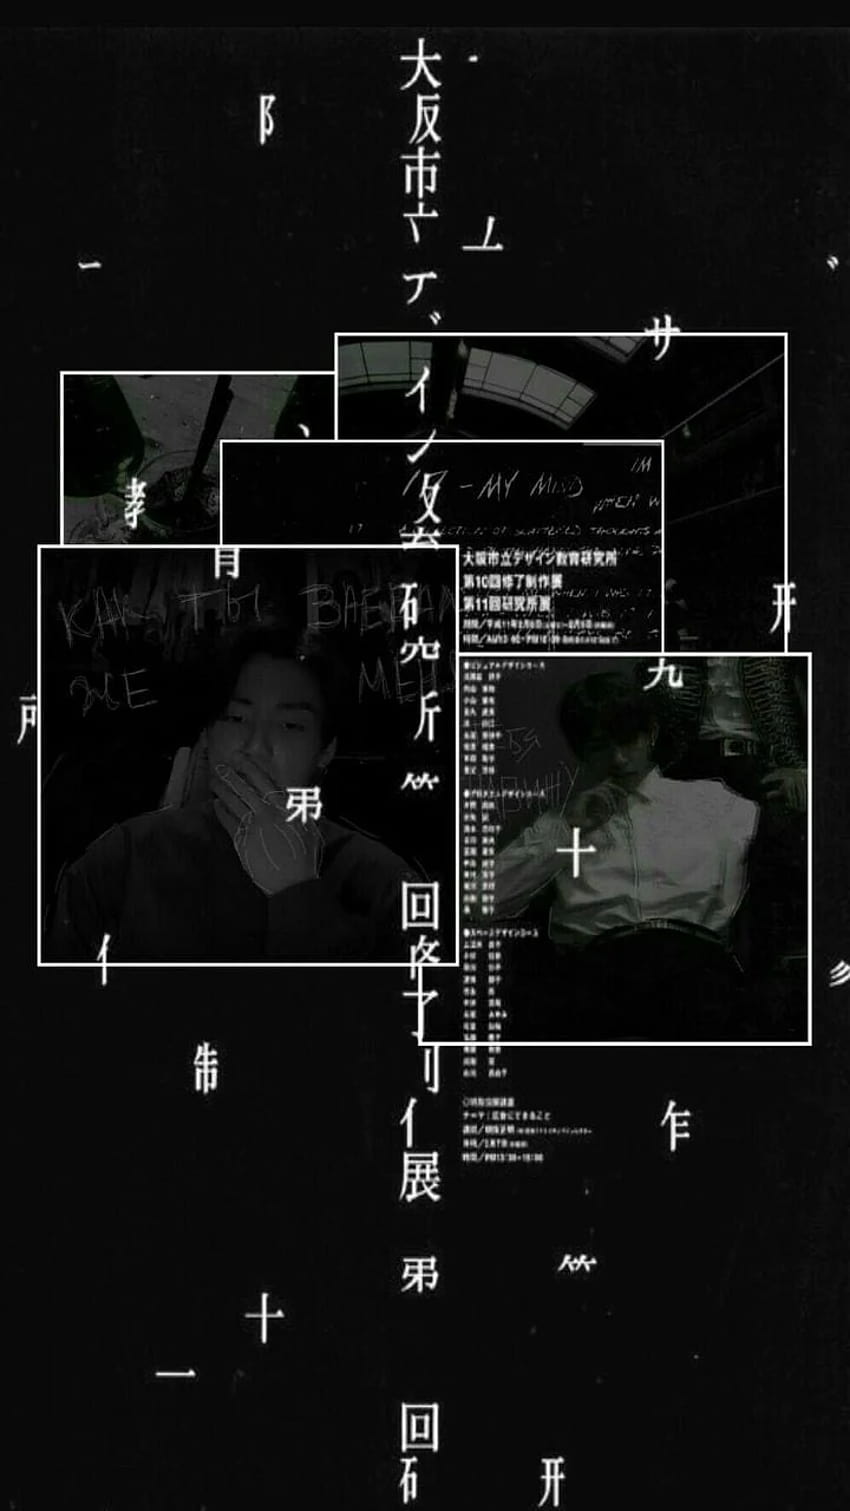 jungkook; credits: JayJam & owner of the I, jungkook black aesthetic HD phone wallpaper